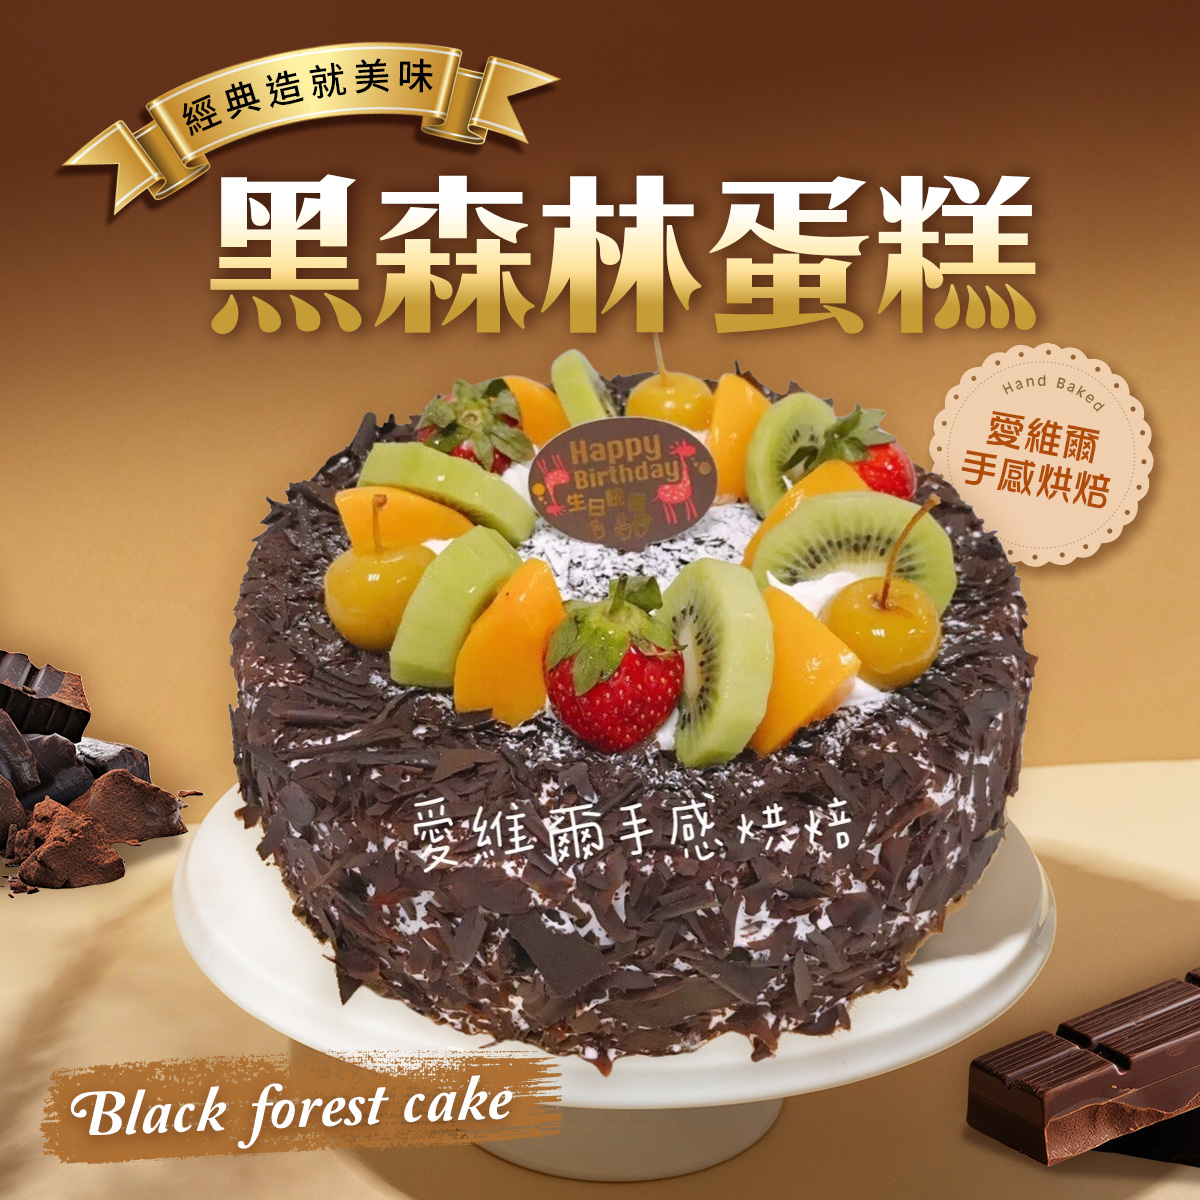 愛維爾手感烘培-黑森林蛋糕〜香綿鬆軟酸甜Q滑同時融匯在味蕾，